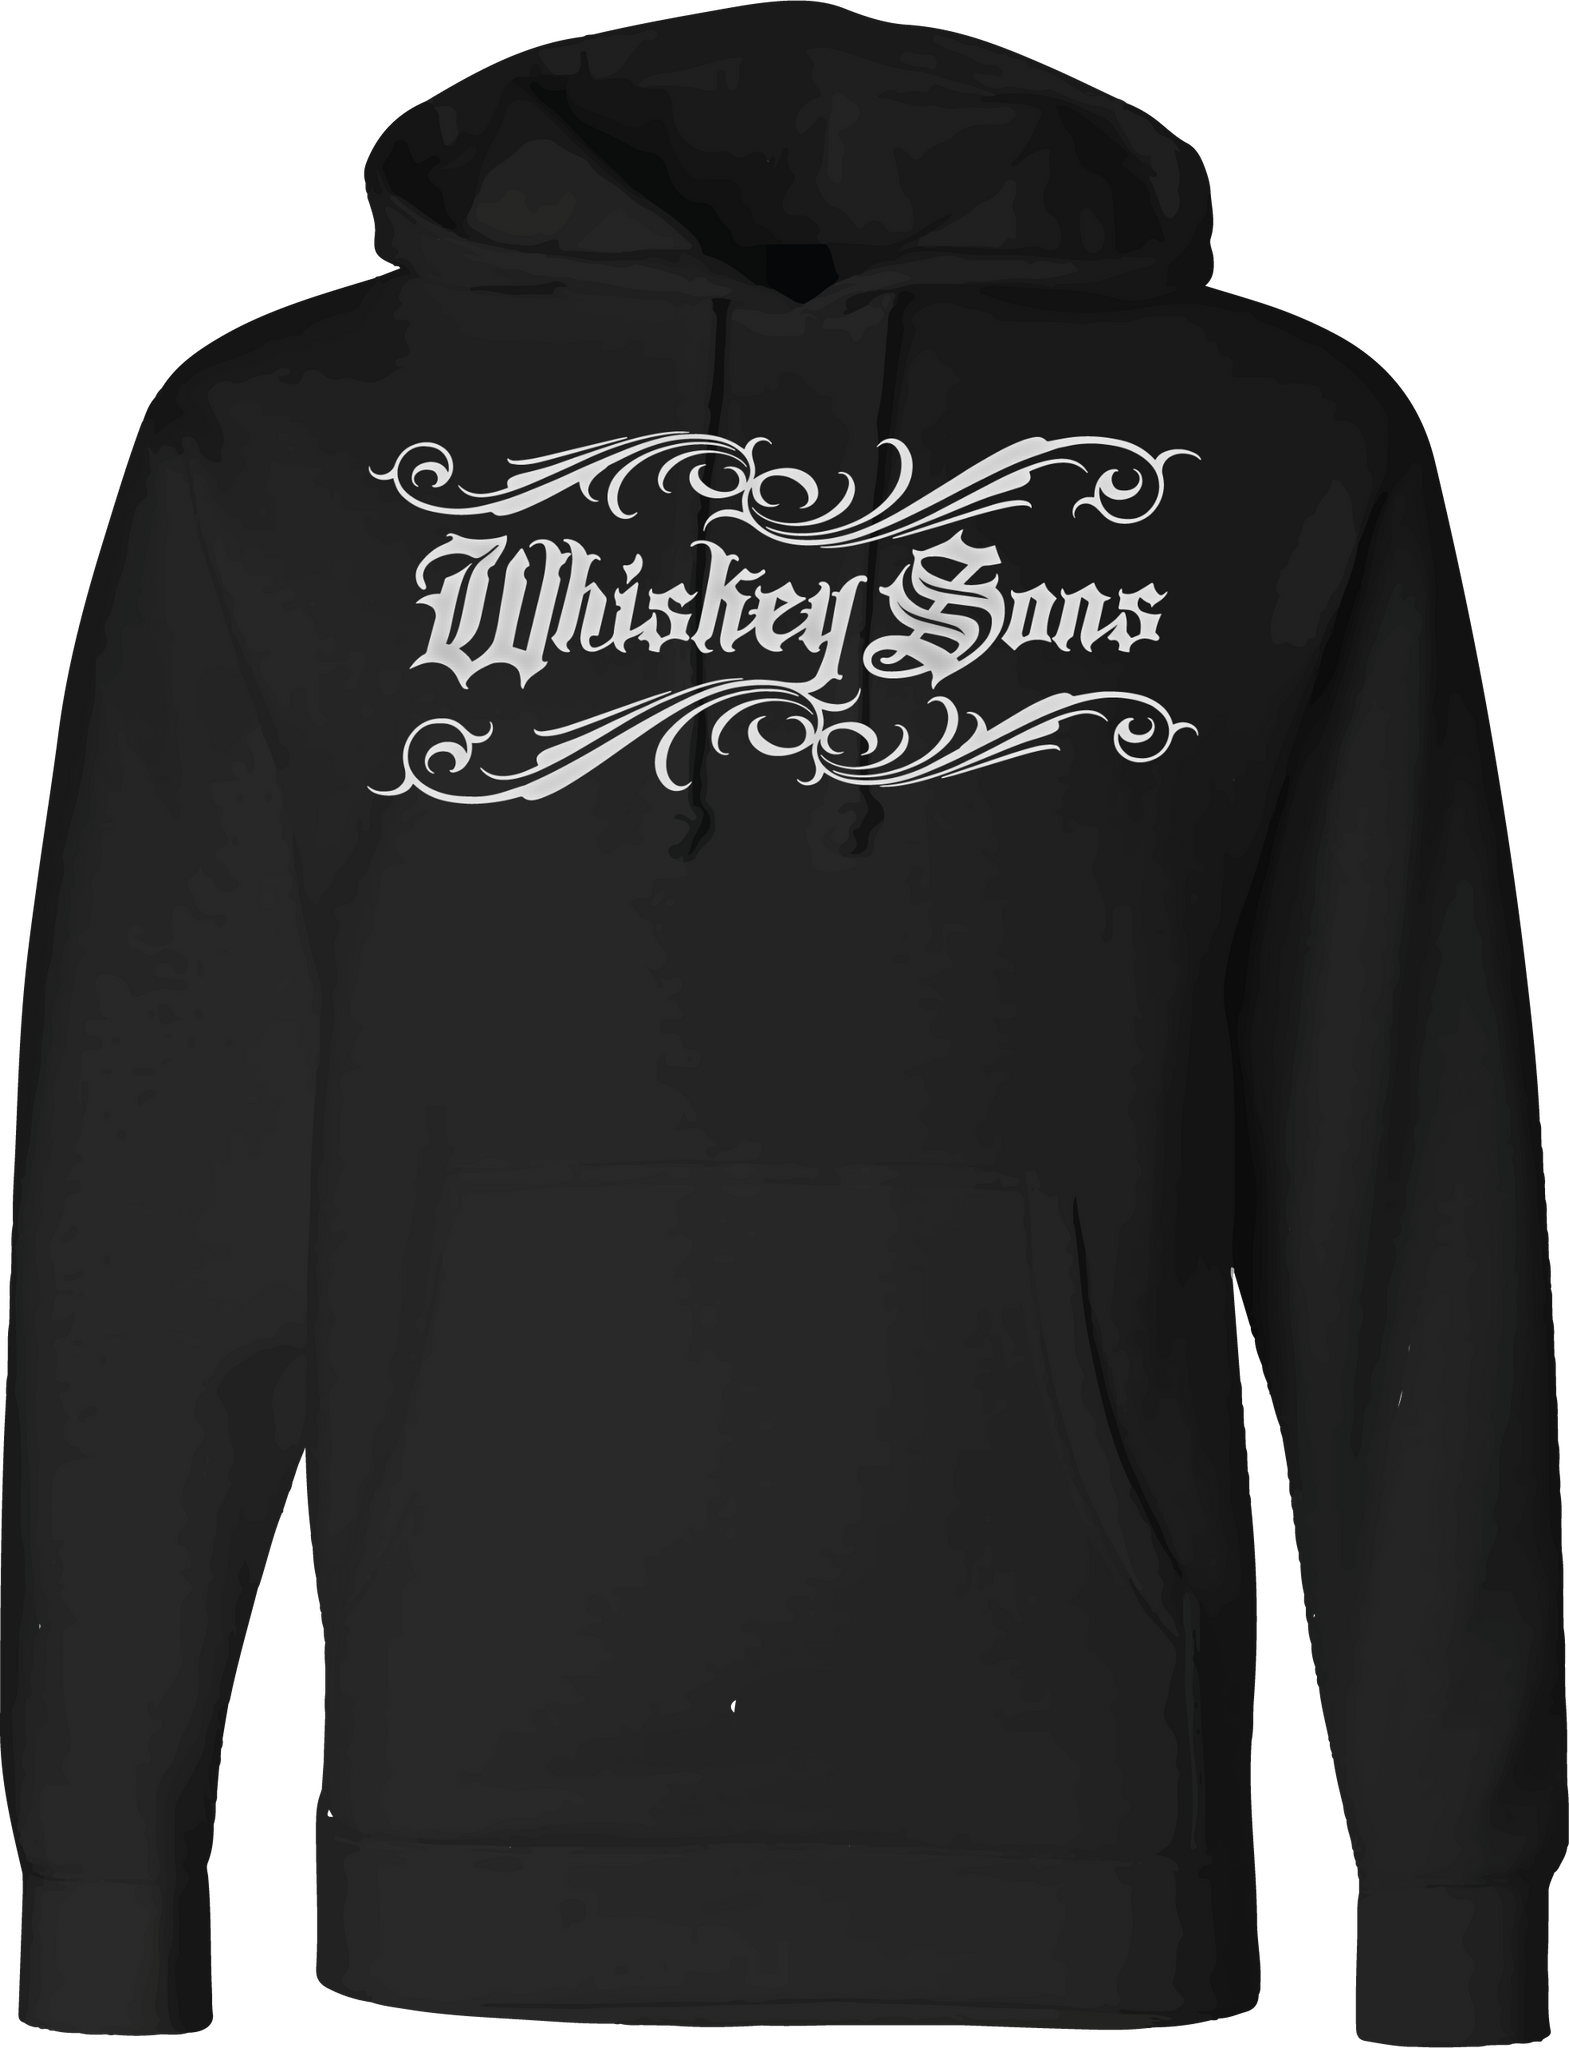 Whiskey Sons Hoodie